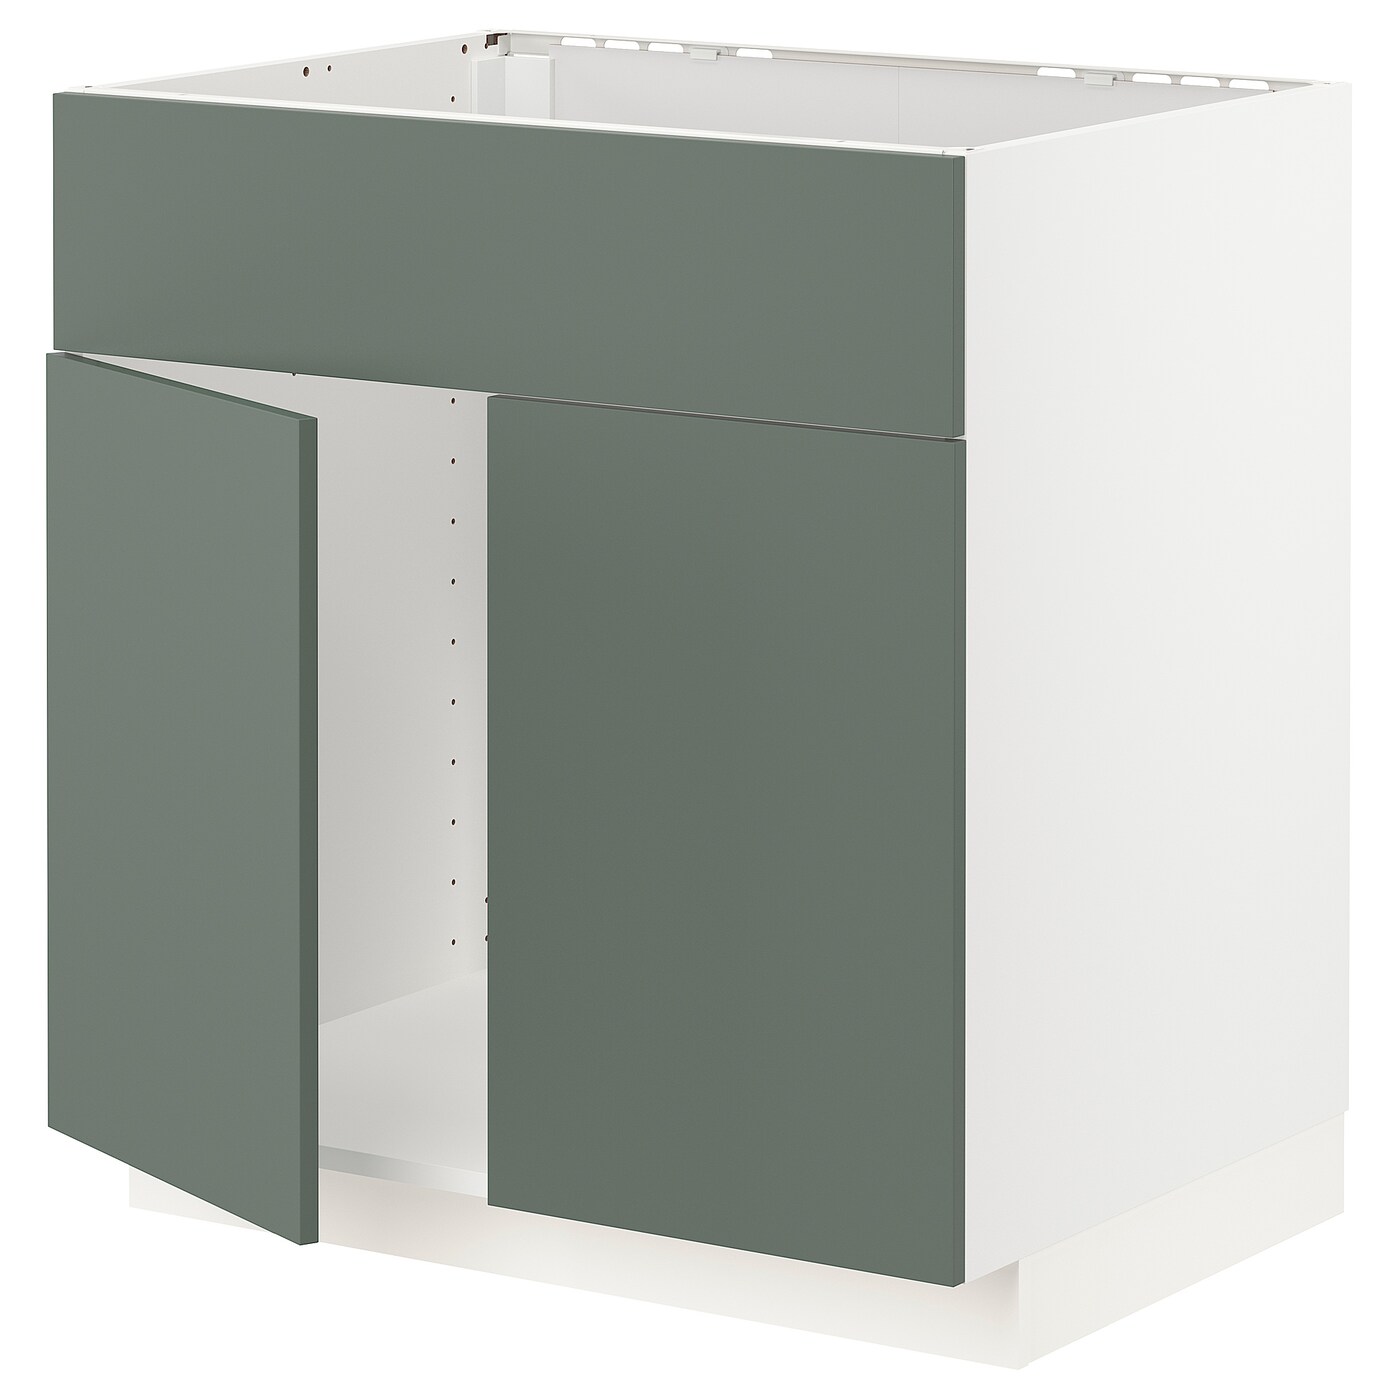 Напольный шкаф  - IKEA METOD, 88x62x80см, белый/серо-зеленый, МЕТОД ИКЕА